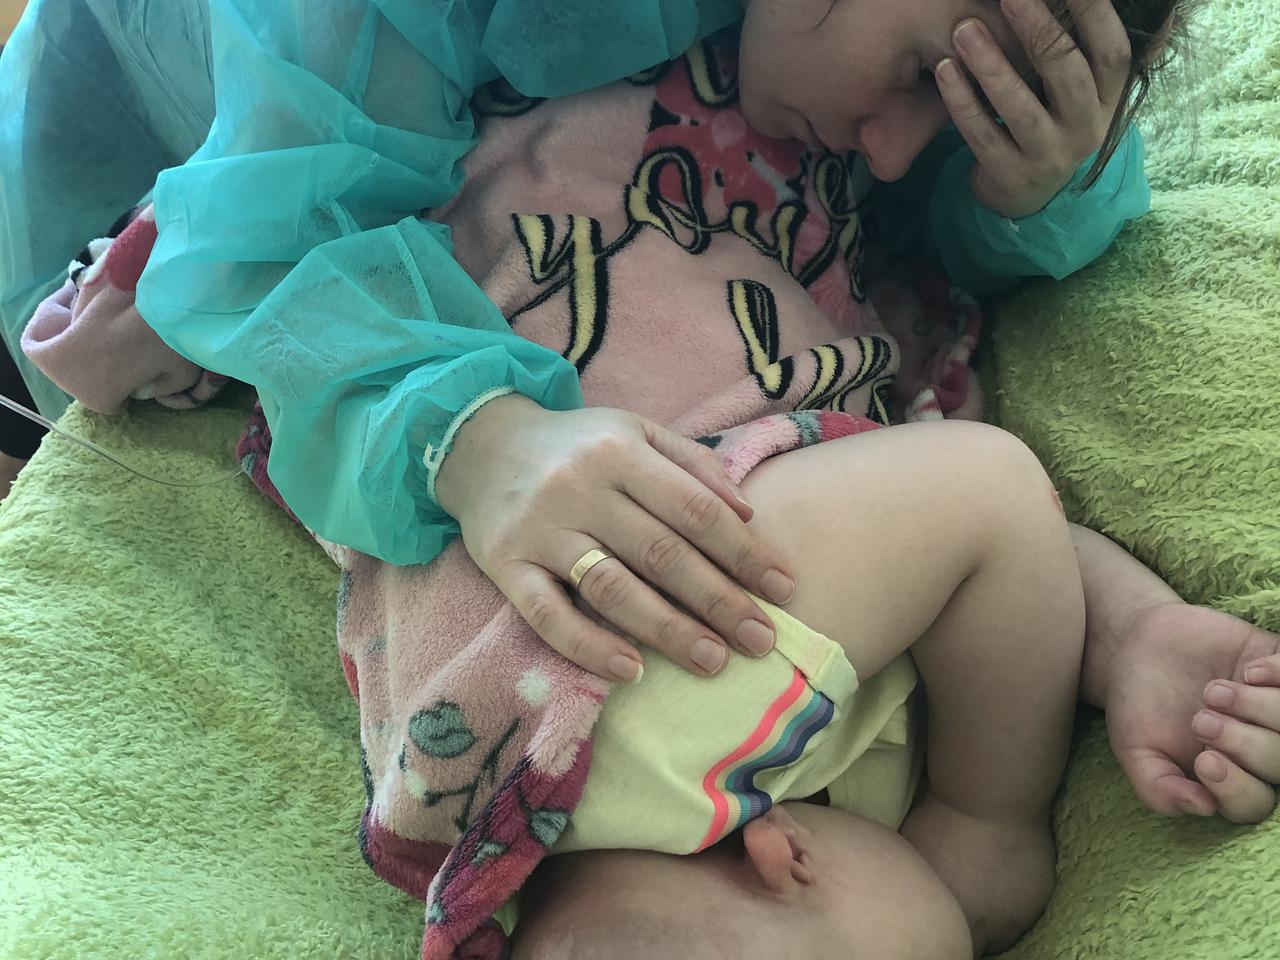 W głowie 5-letniej Marianki z Sosnowca rośnie śmiertelny guz. Trwa zbiórka na jej leczenie w USA, potrzeba 3 mln złotych!